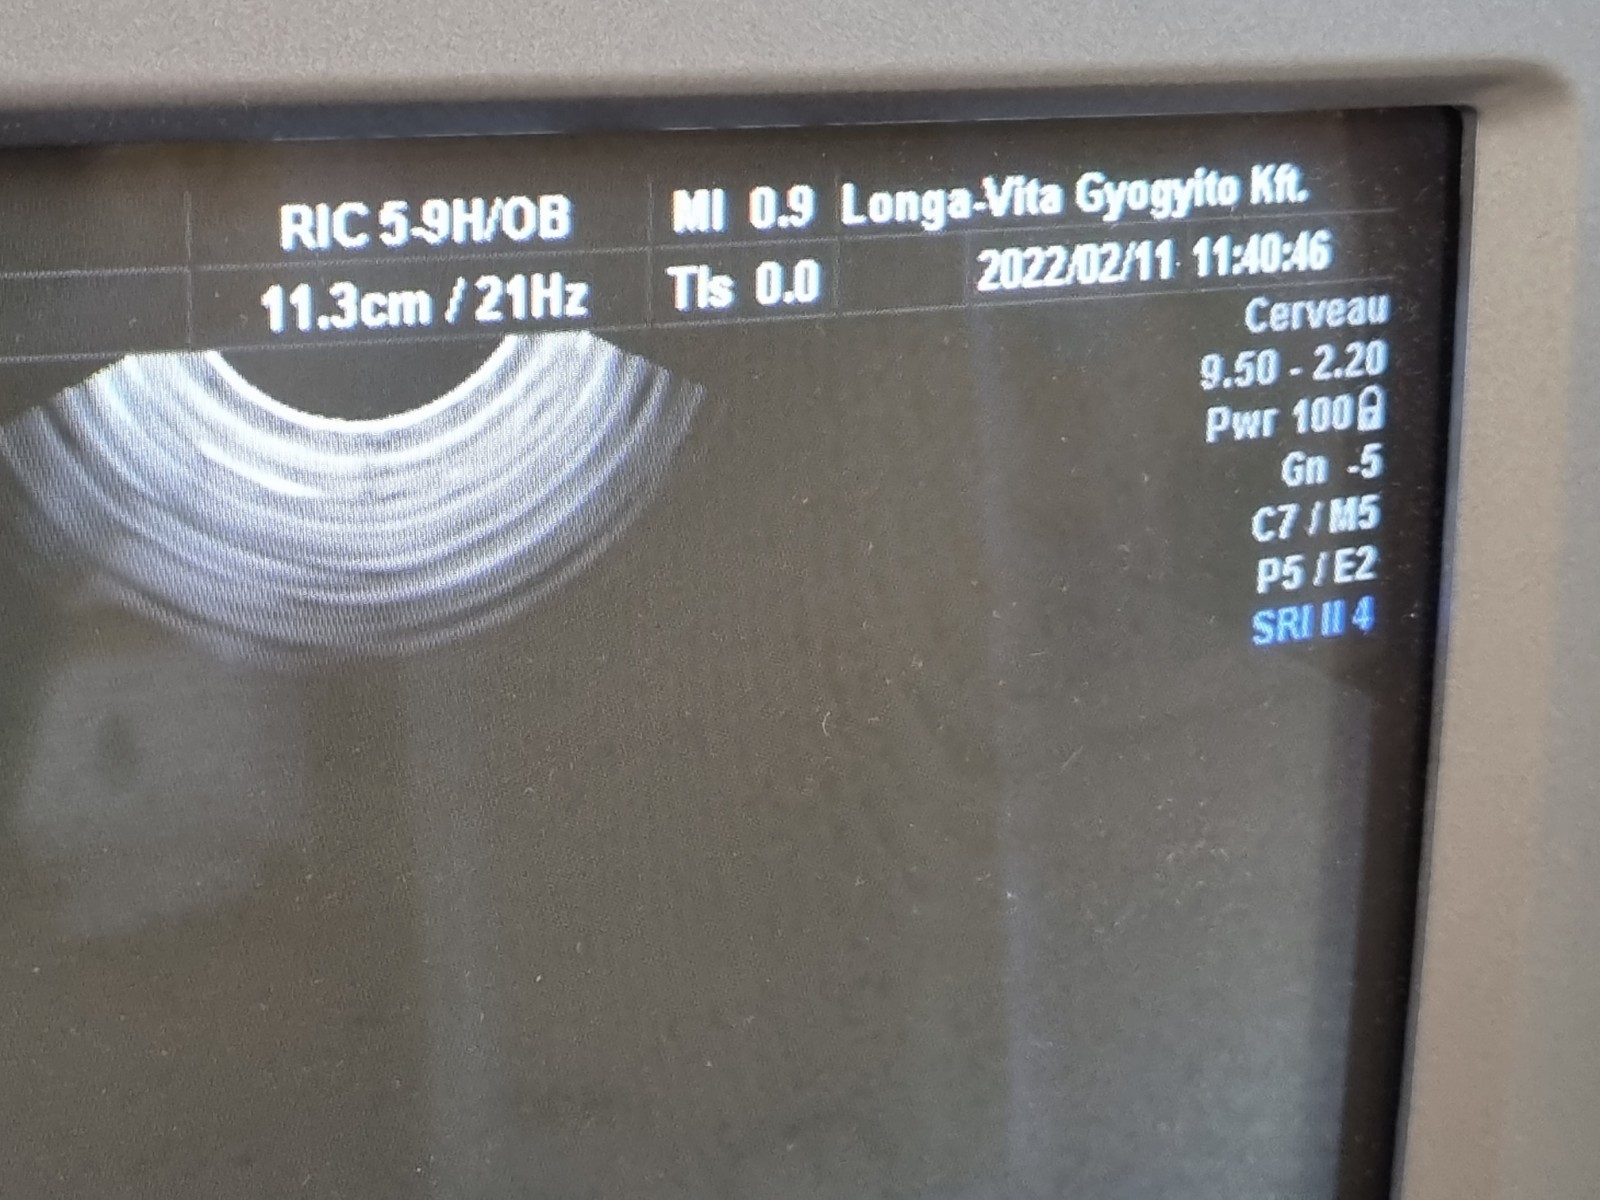 Eladó használt GE Voluson V730 Pro ultrahang készülék 4D hüvelyi vizsgálófejének ultrahang képe